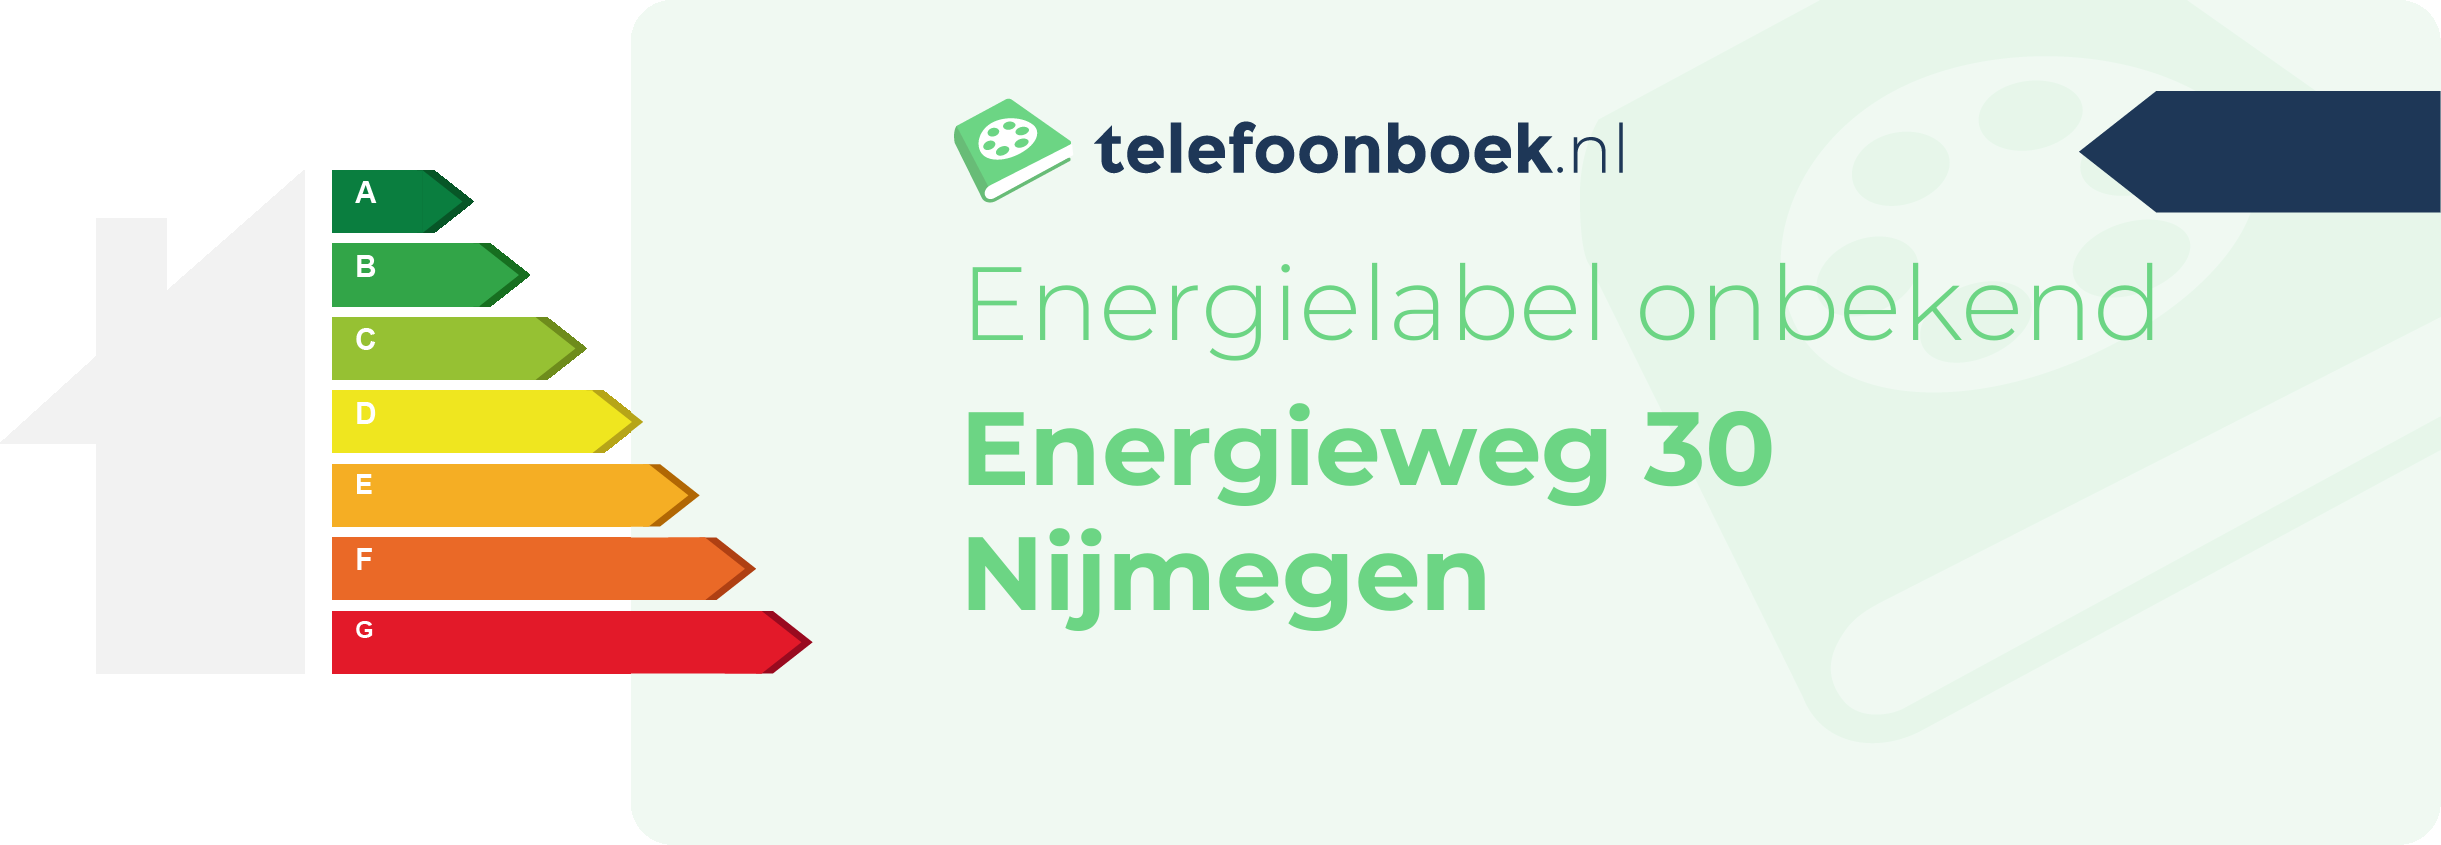 Energielabel Energieweg 30 Nijmegen